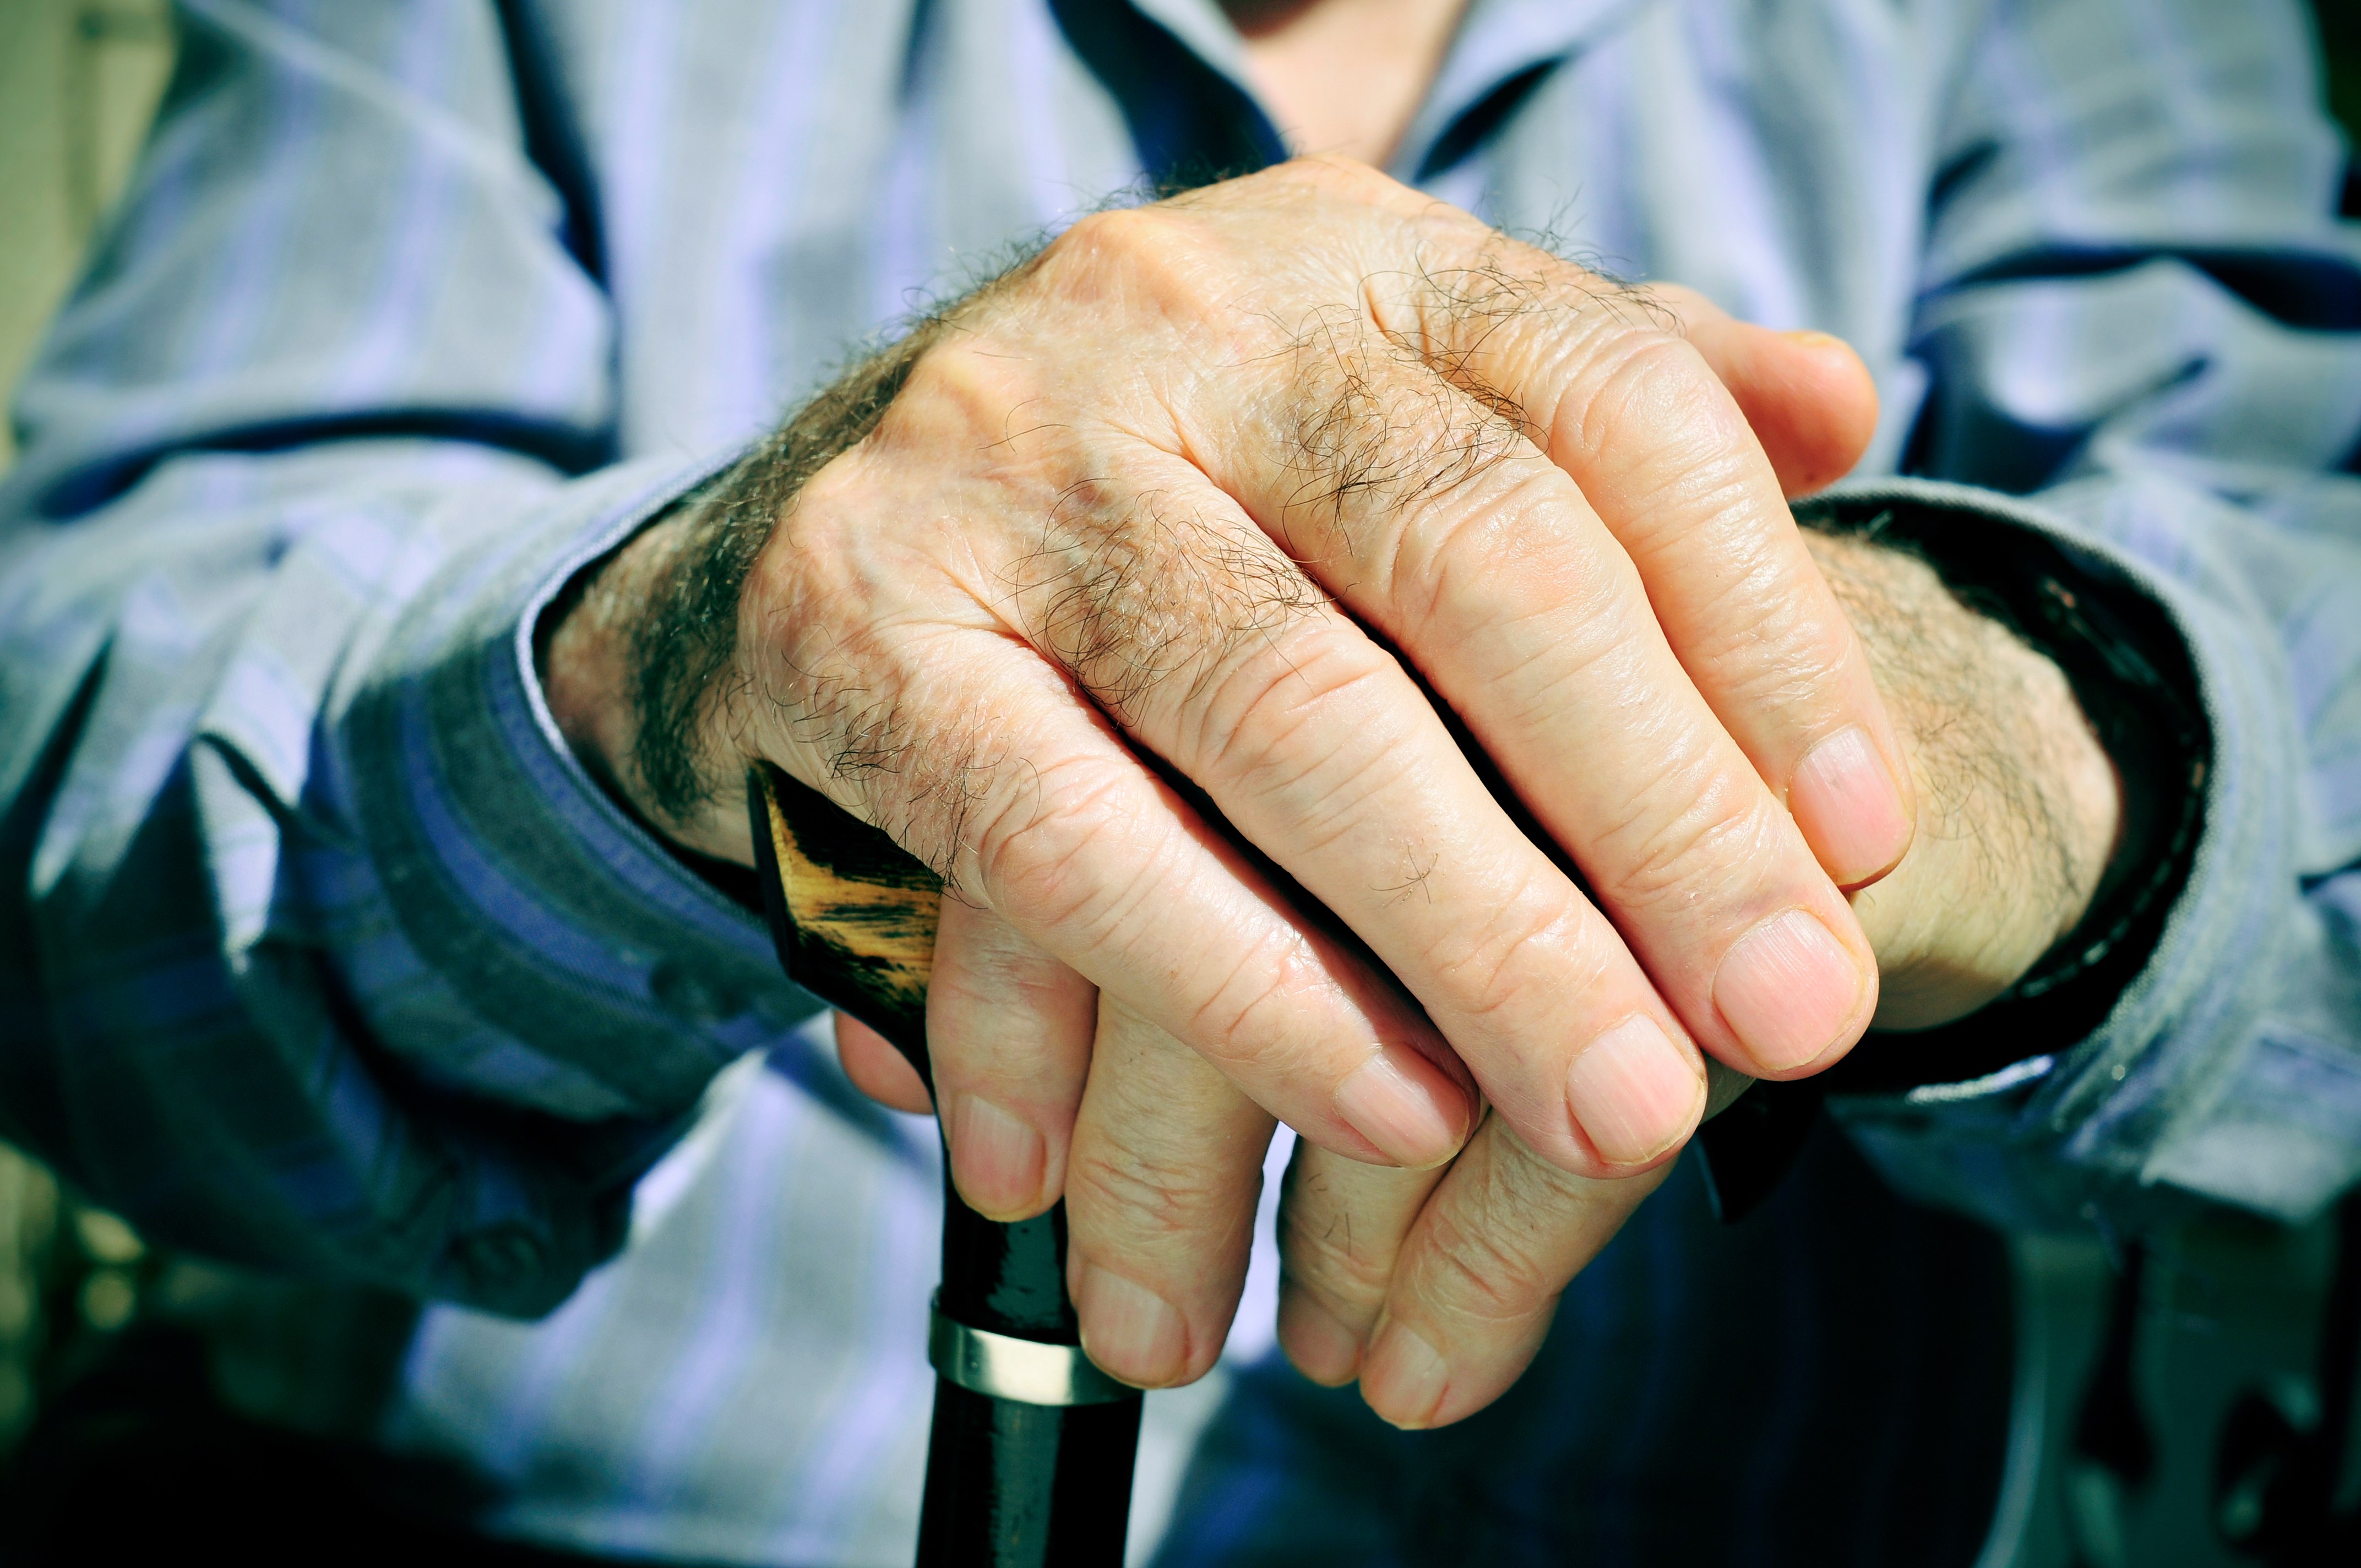 Ældre person med hænder på en stok